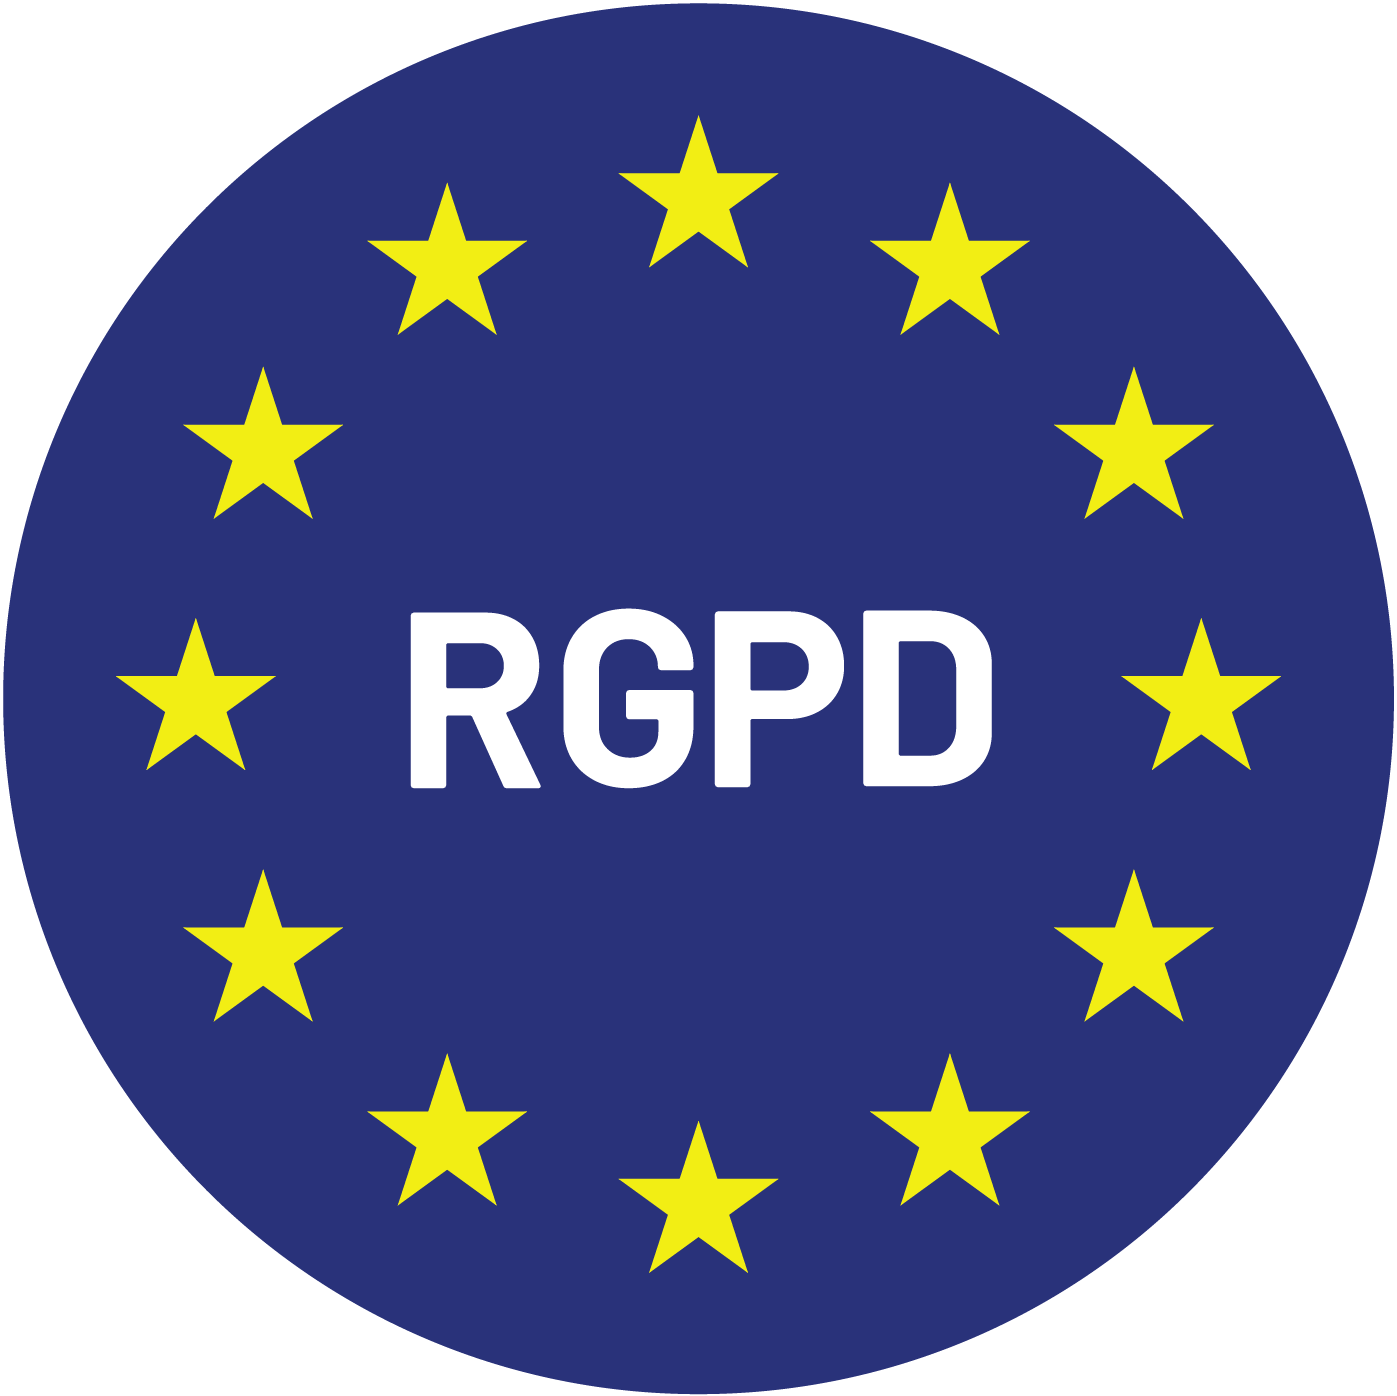 ## RGPD

- Règlement Général de Protection des Données
- La confidentialité et la protection de vos données sont de véritables clés de voûte de notre organisation
- Le respect de la RGPD est un signe clé de confiance en termes de protection
